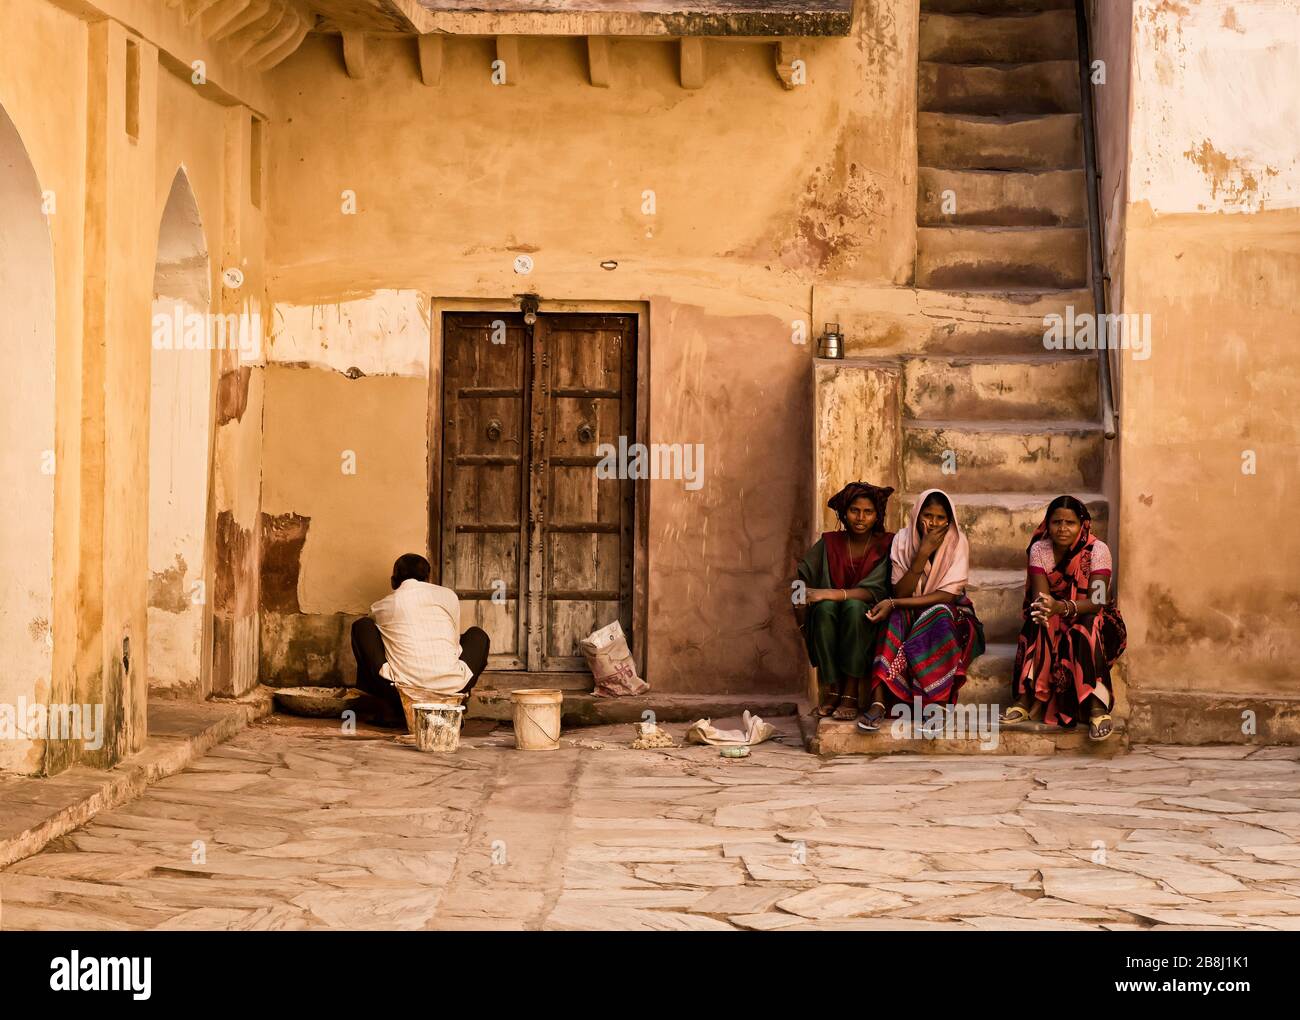 Indiens au fort Amber, Jaipur, Rajasthan, Inde Banque D'Images